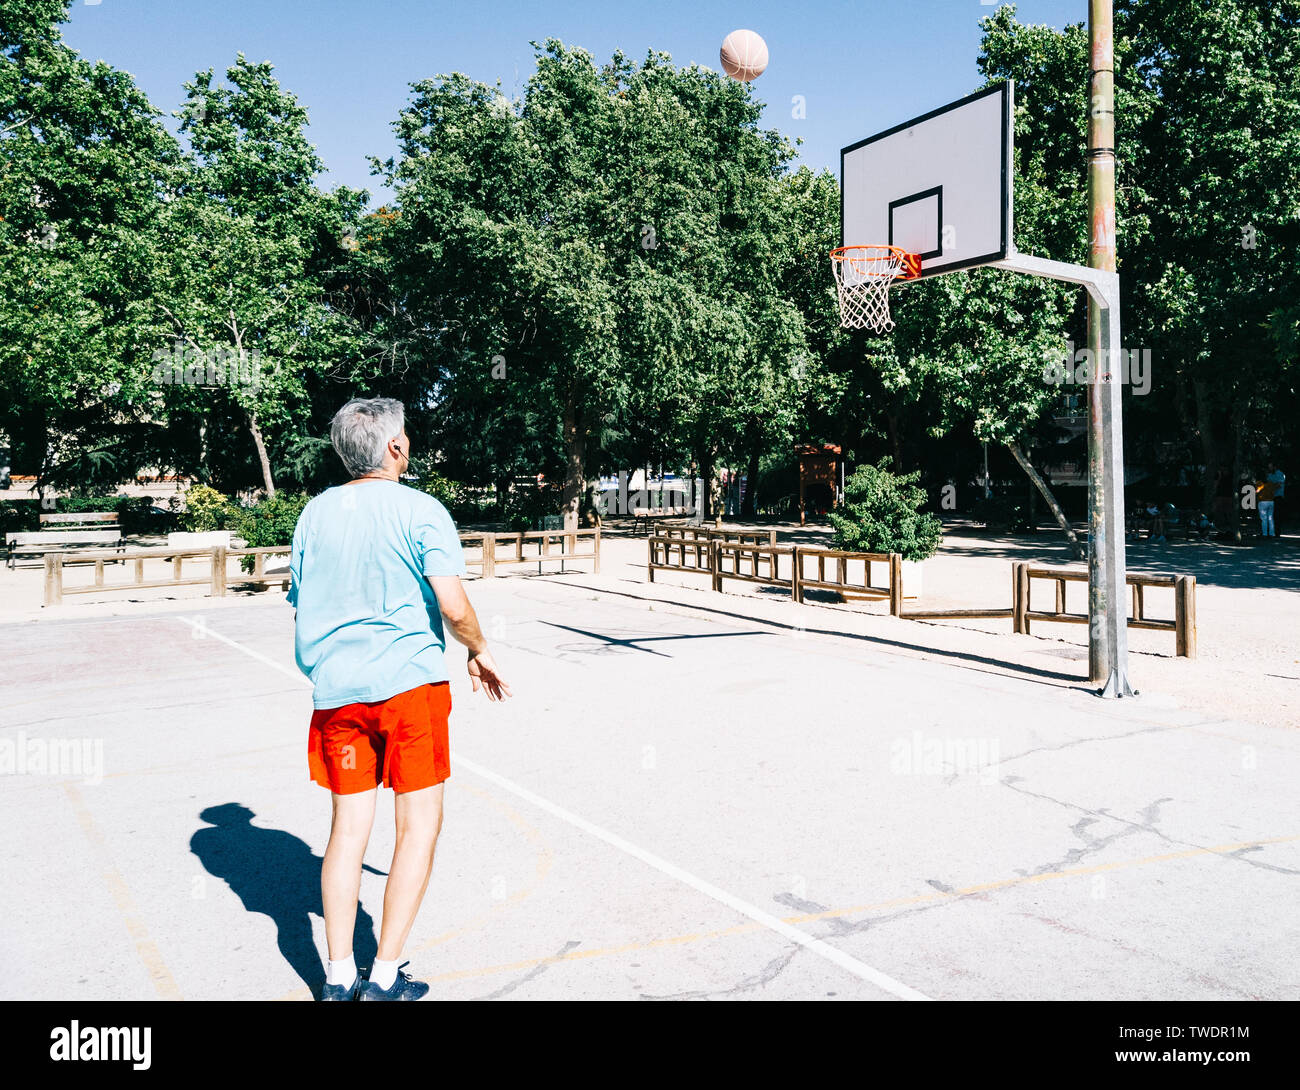 Vieil homme jouant et d'encadrement dans un seul panier de basket-ball Banque D'Images